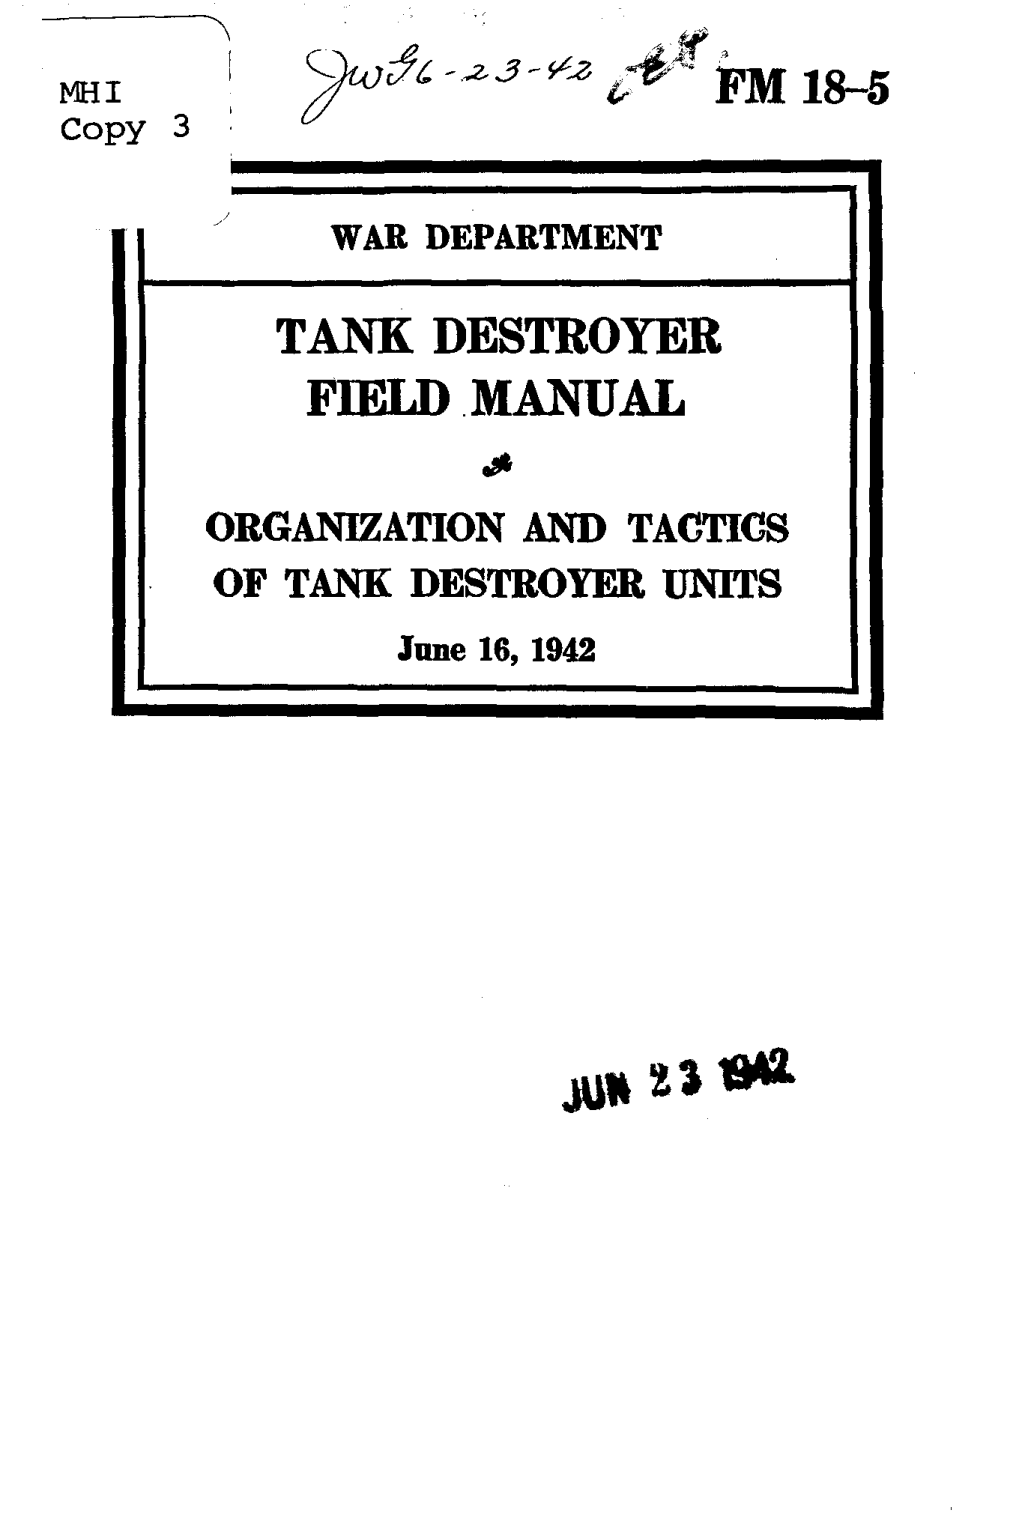 Tank Destroyer Field Manual